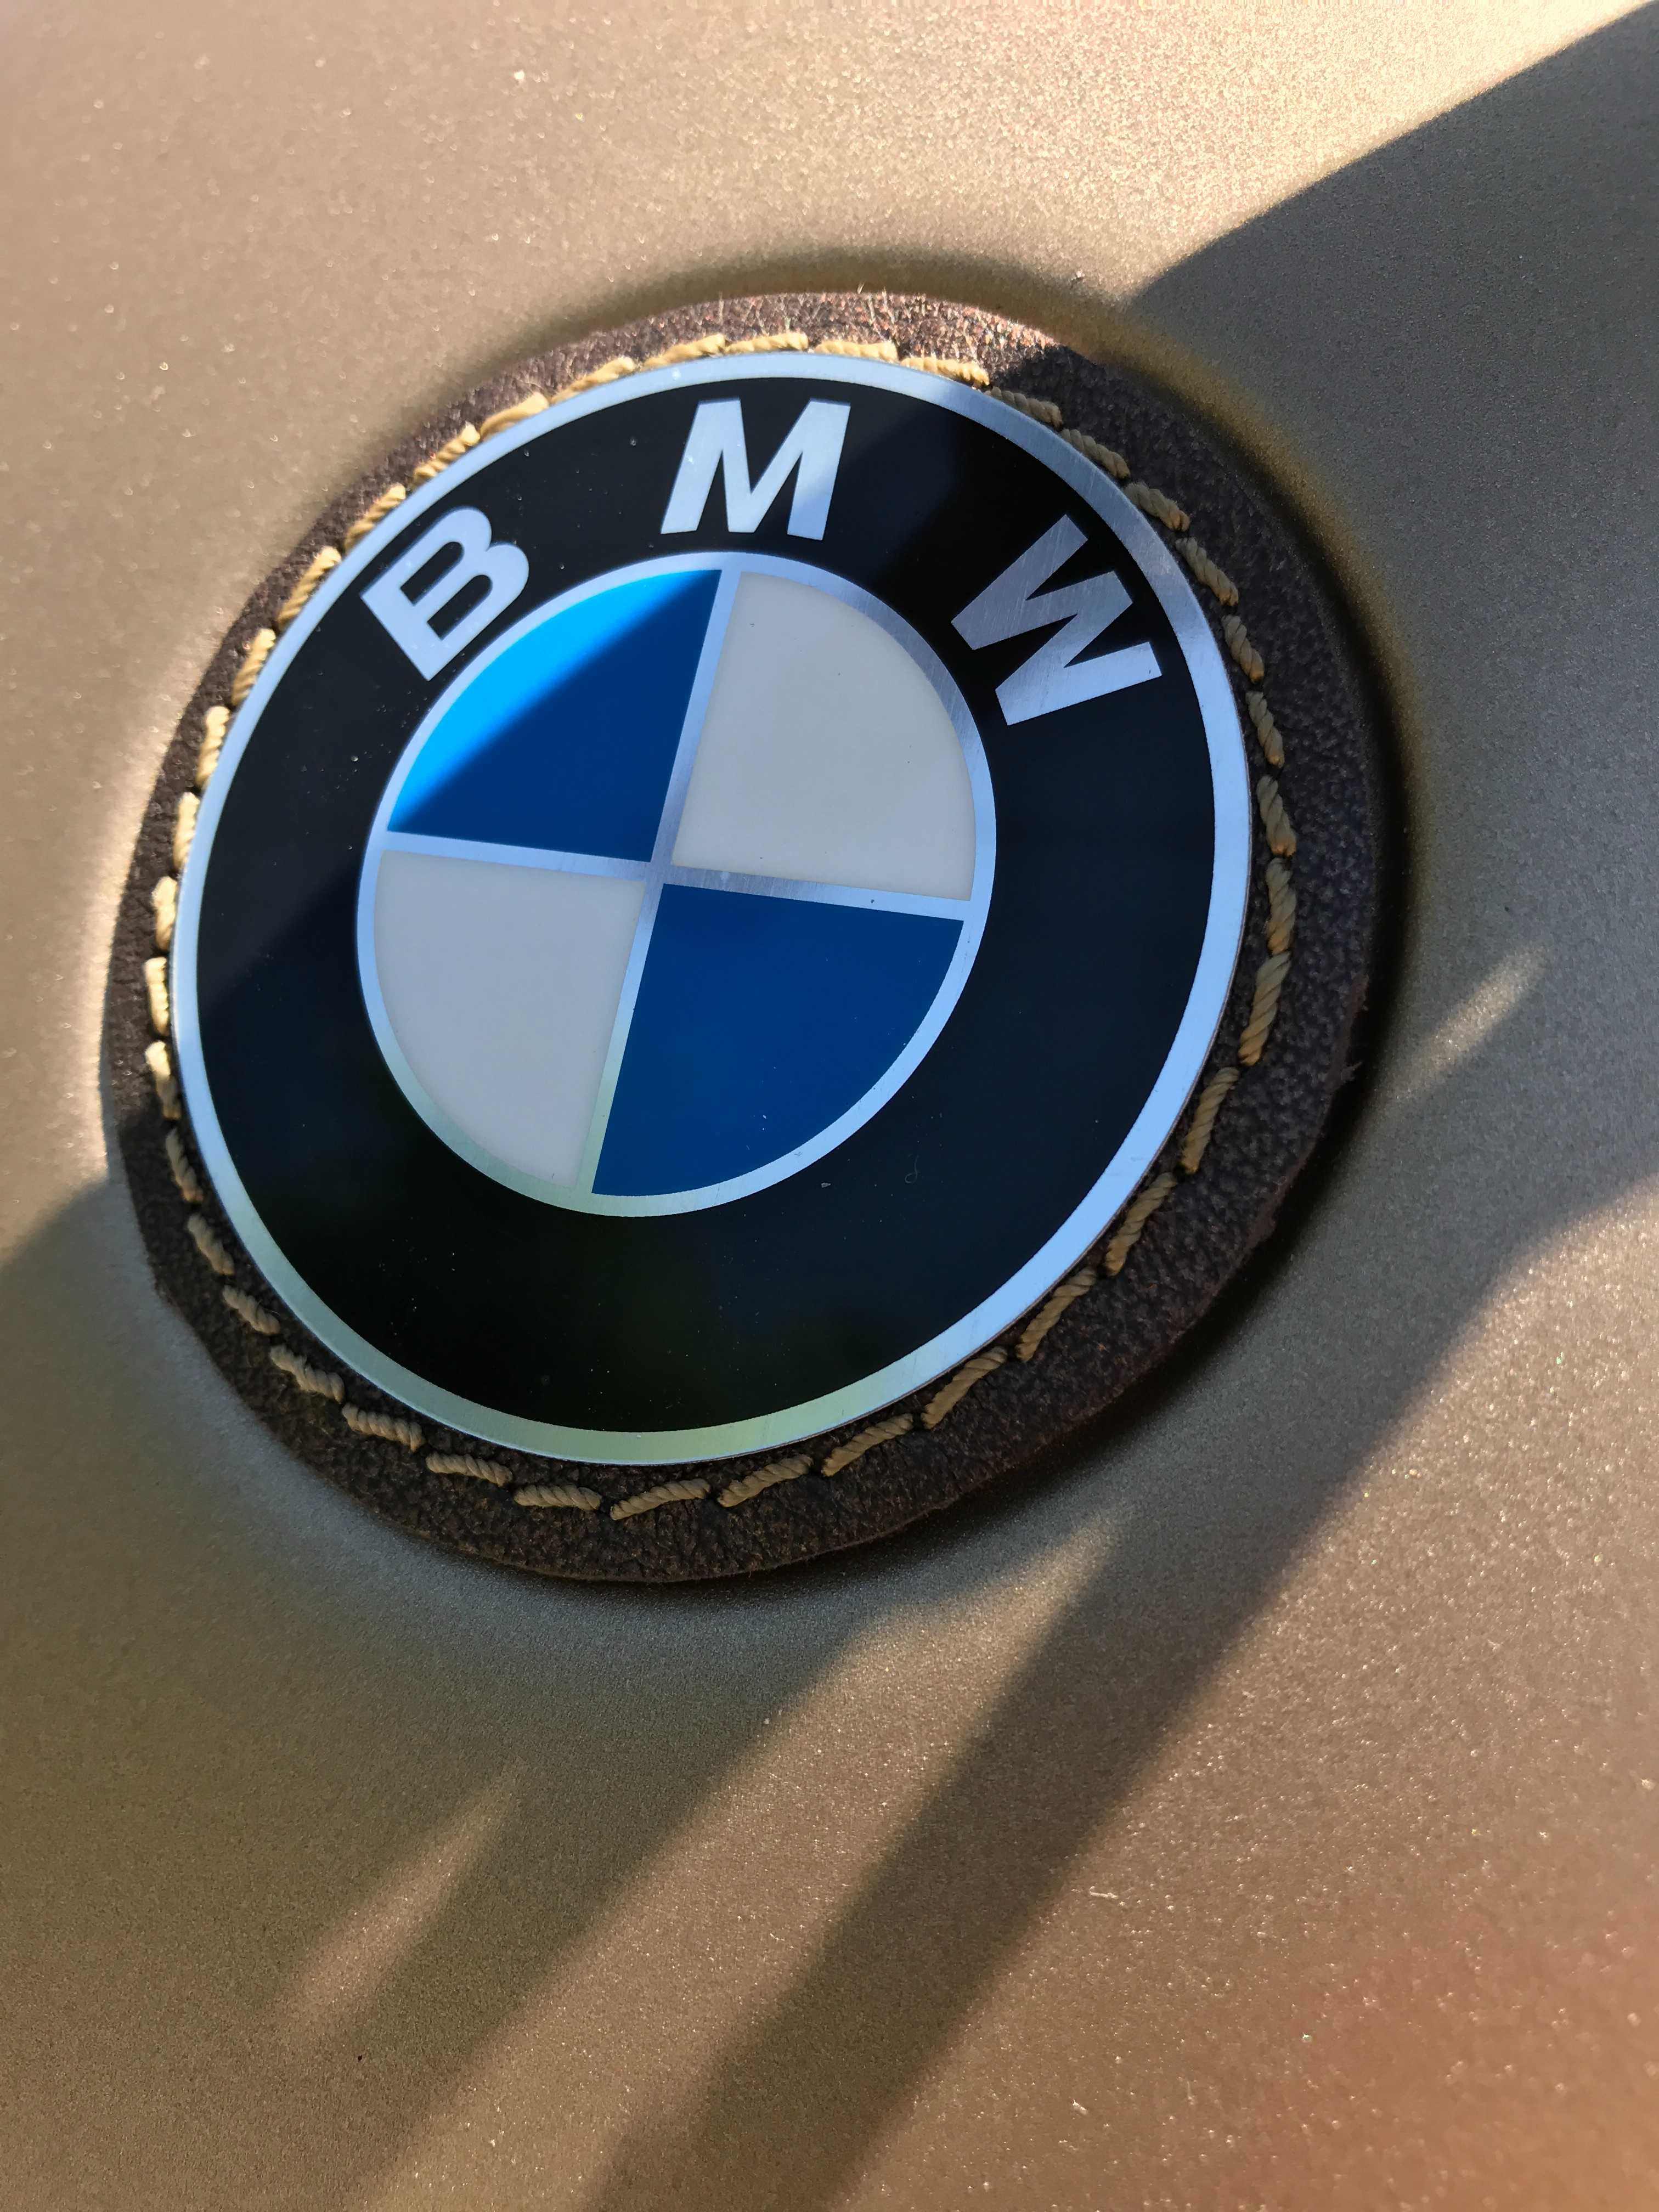 BMW R80/7 Custom